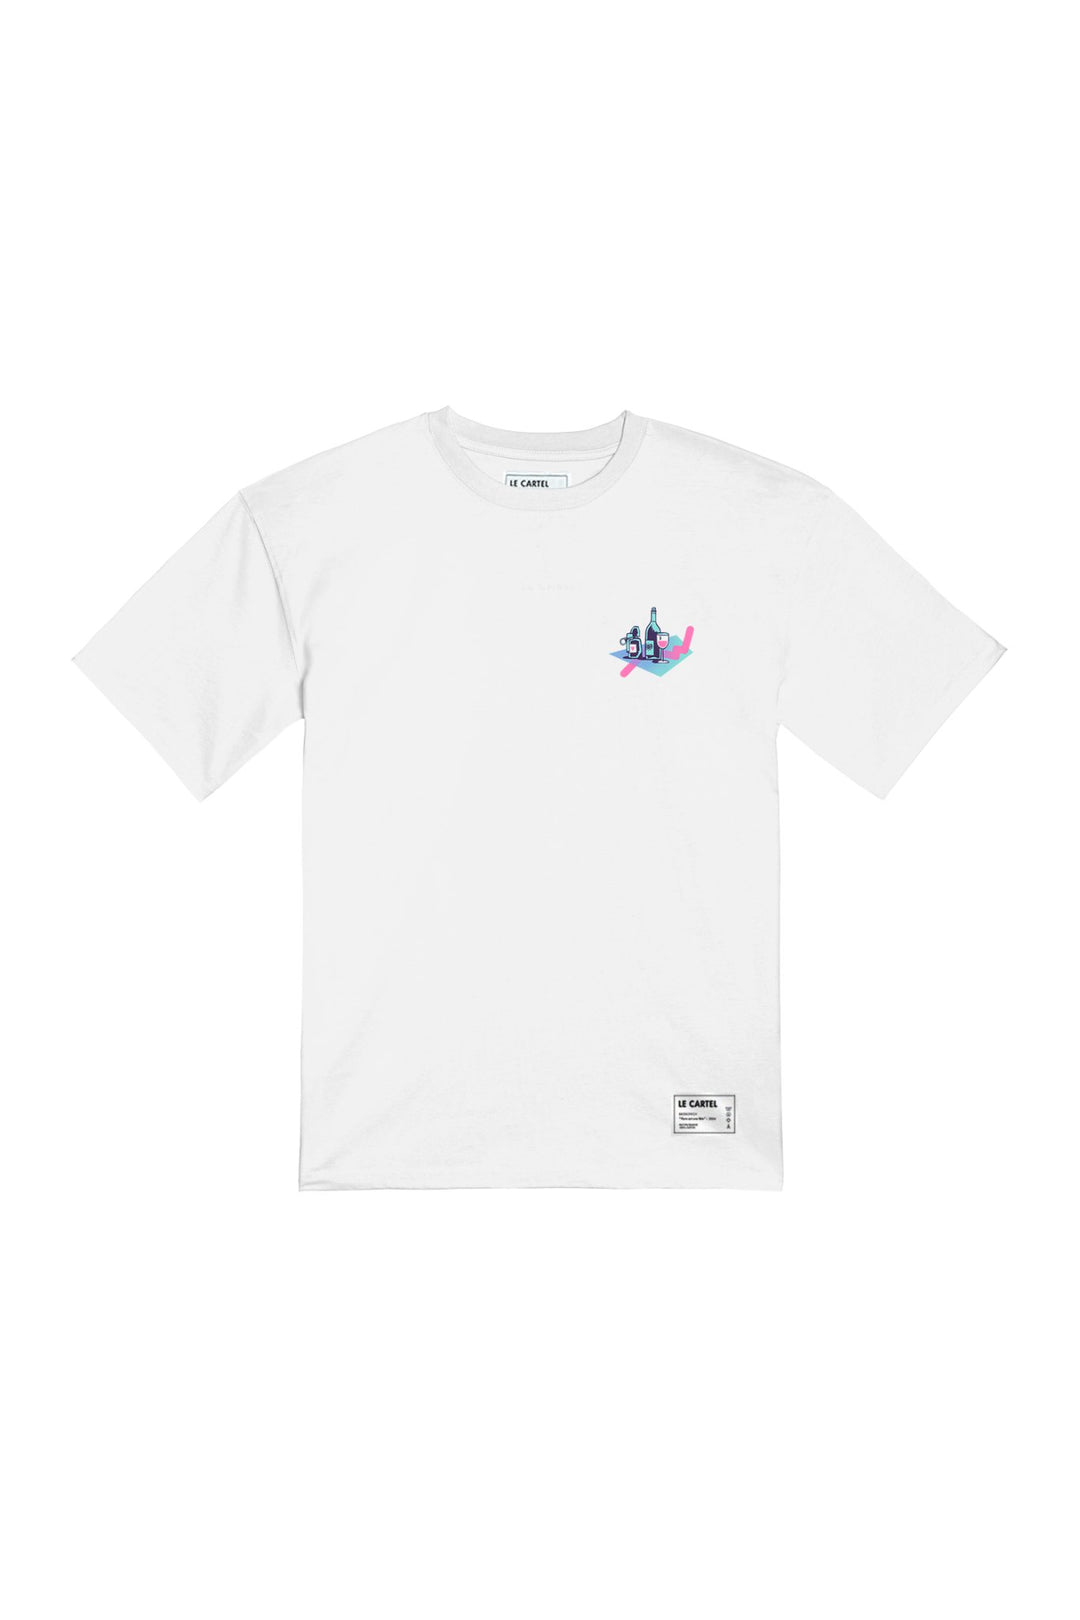 LA GROSSE TEUF・T-shirt unisexe・Blanc - Le Cartel